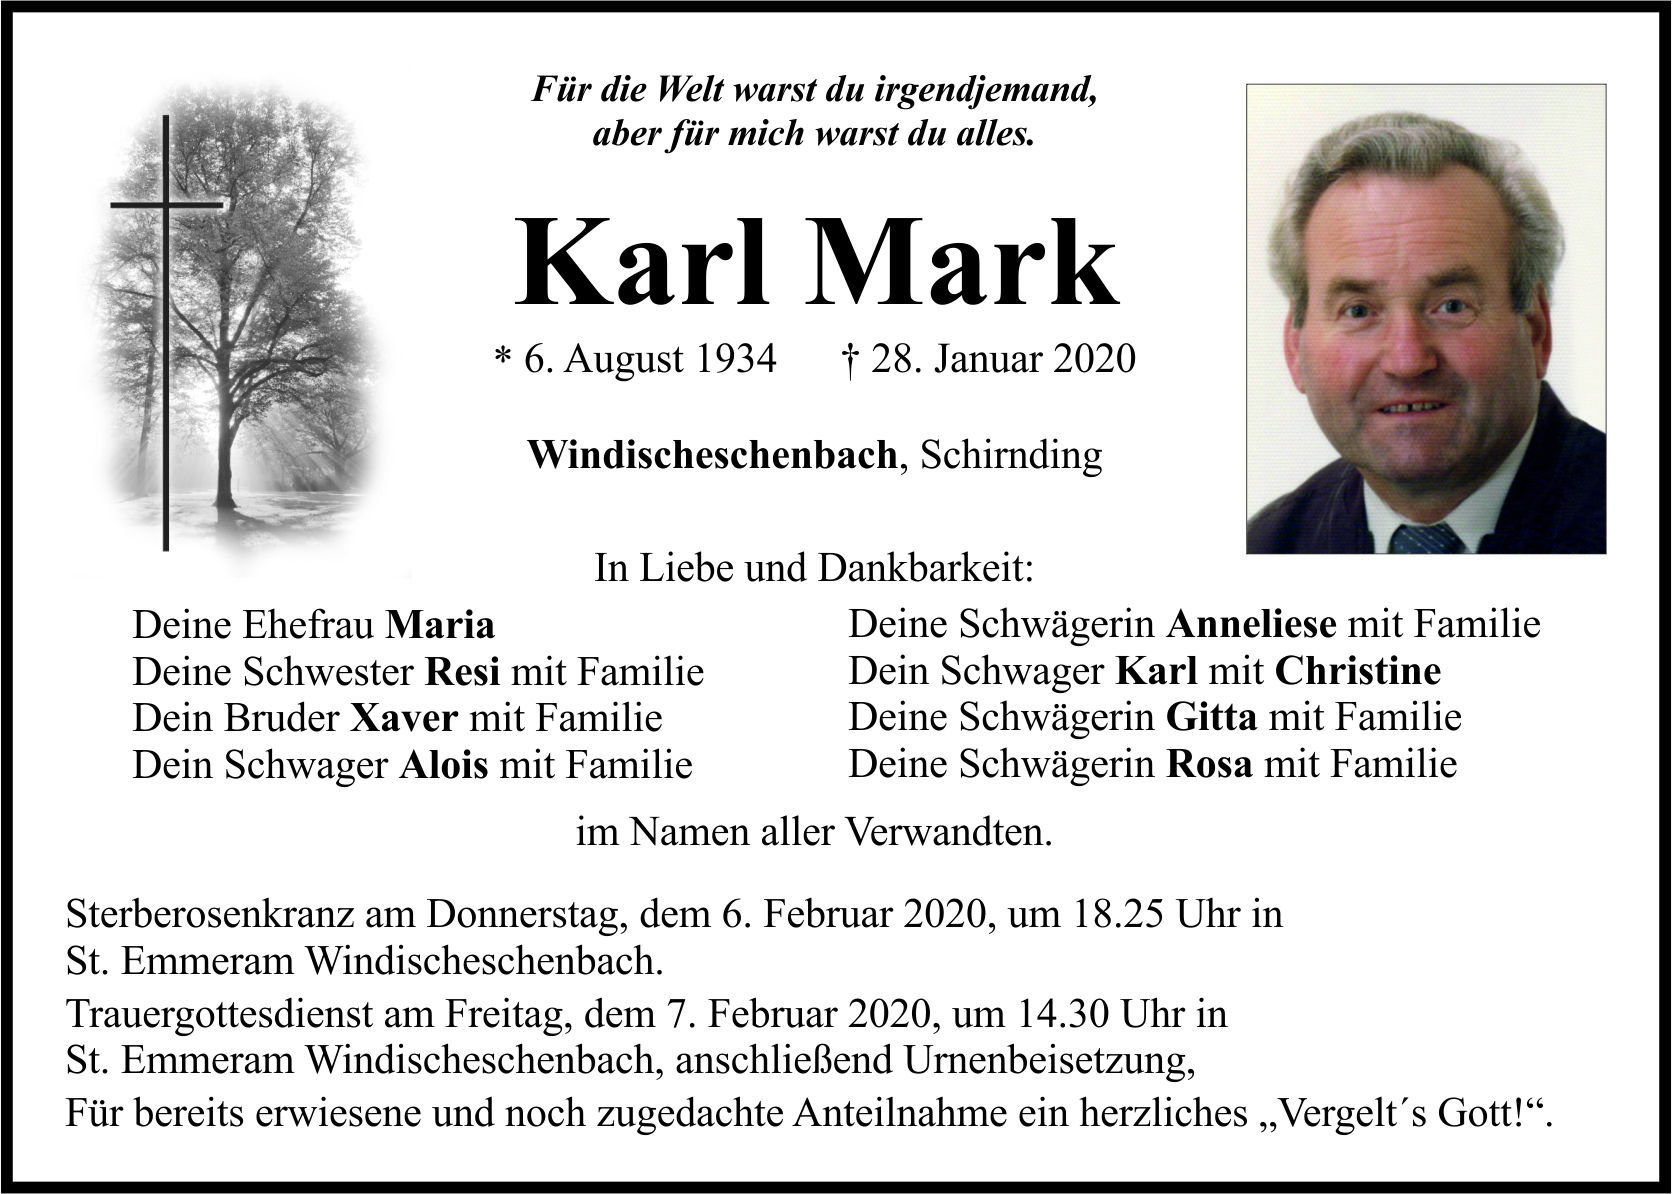 Traueranzeige Karl Mark, Windischeschenbach